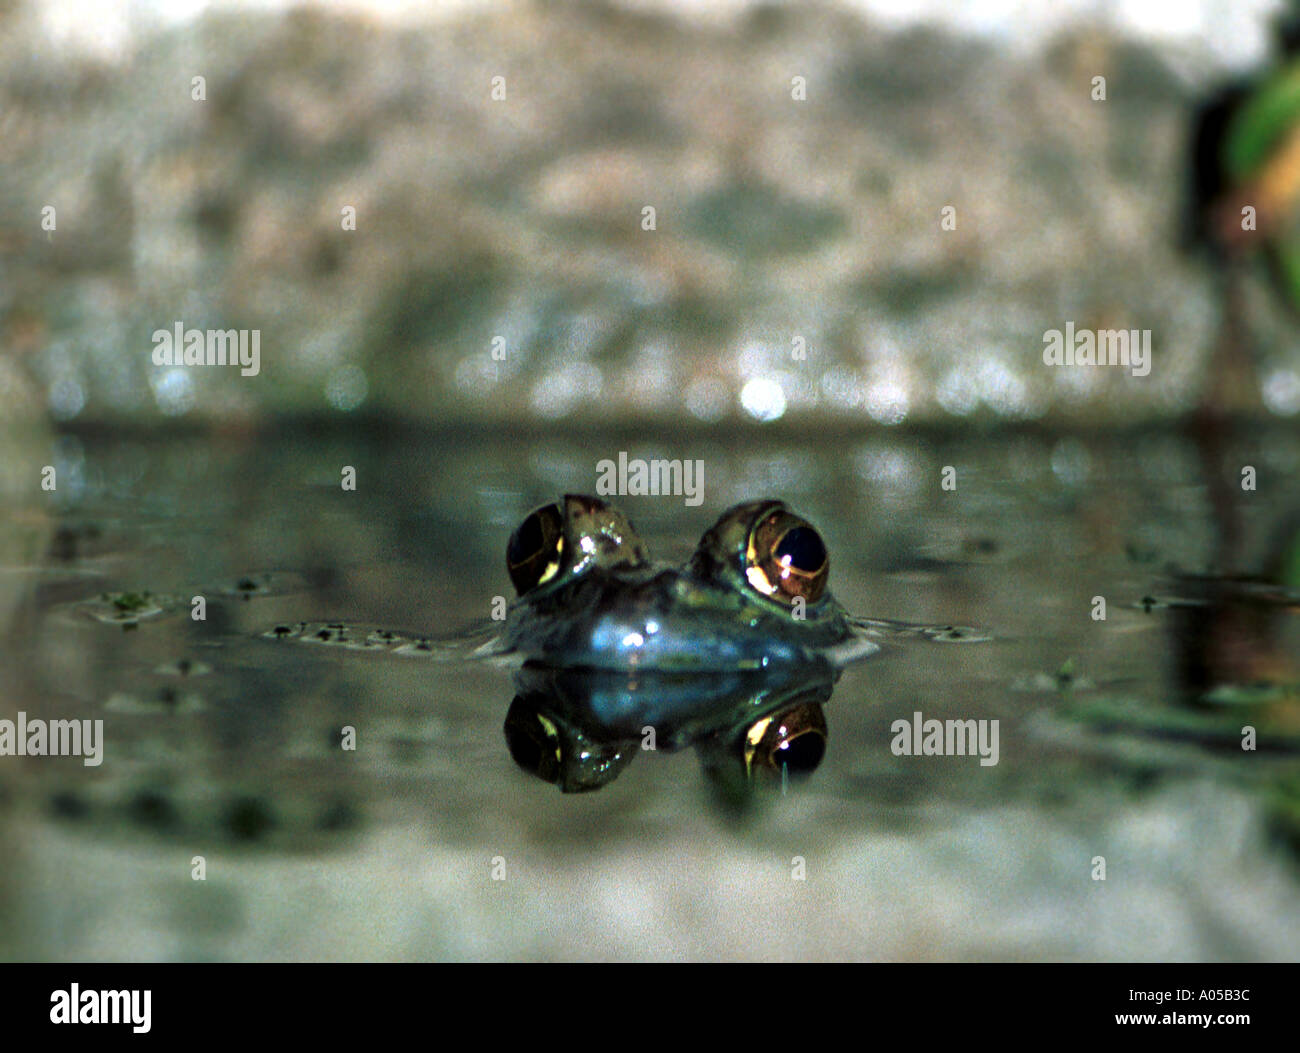 Froschaugen spiegelt sich im Wasser Stockfotografie - Alamy